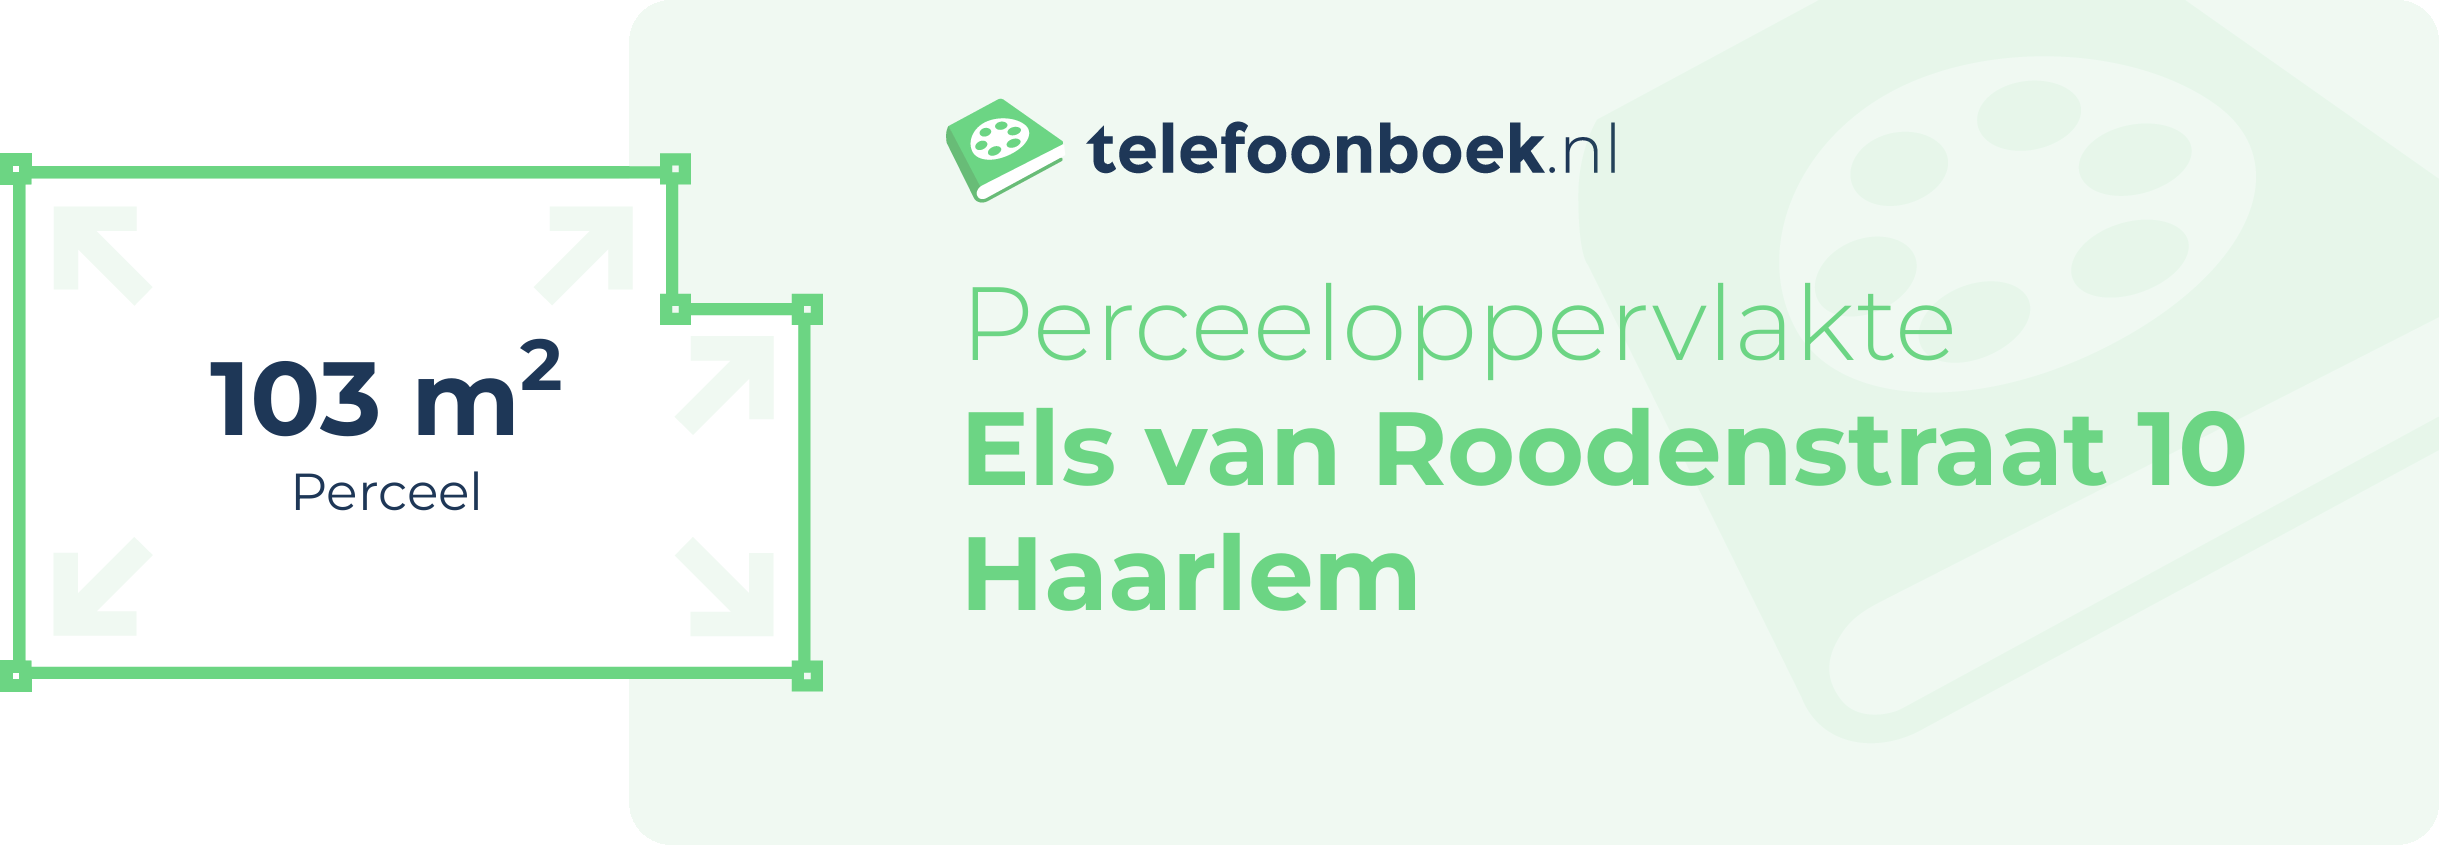 Perceeloppervlakte Els Van Roodenstraat 10 Haarlem